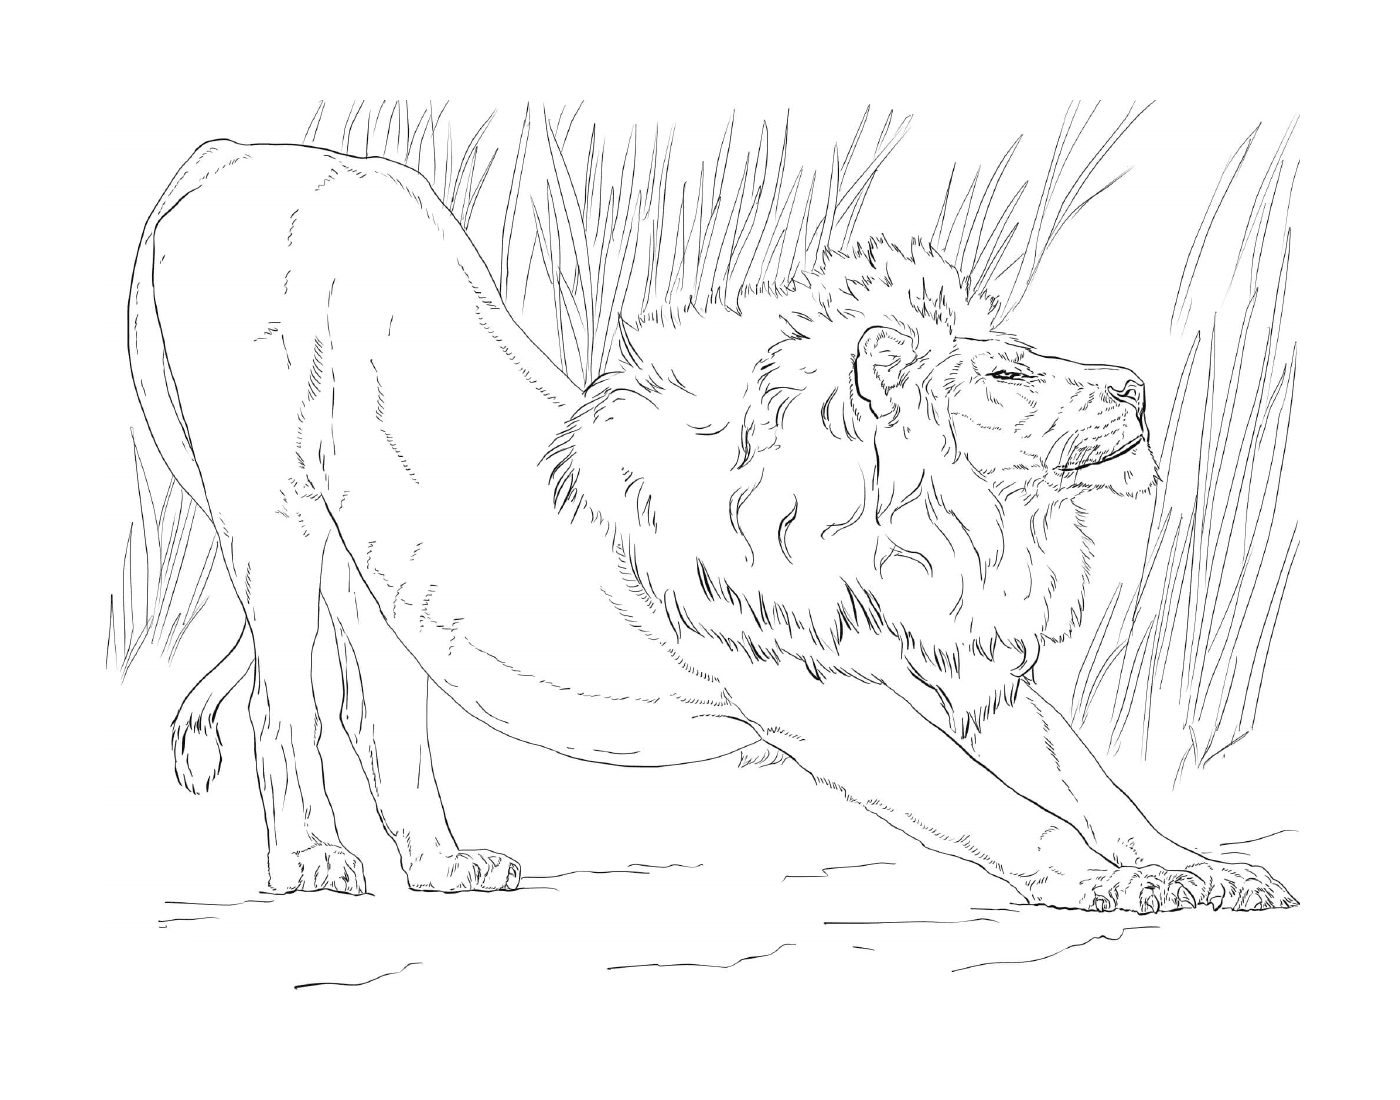  maschio leone stretching di fronte alle alte erbe 